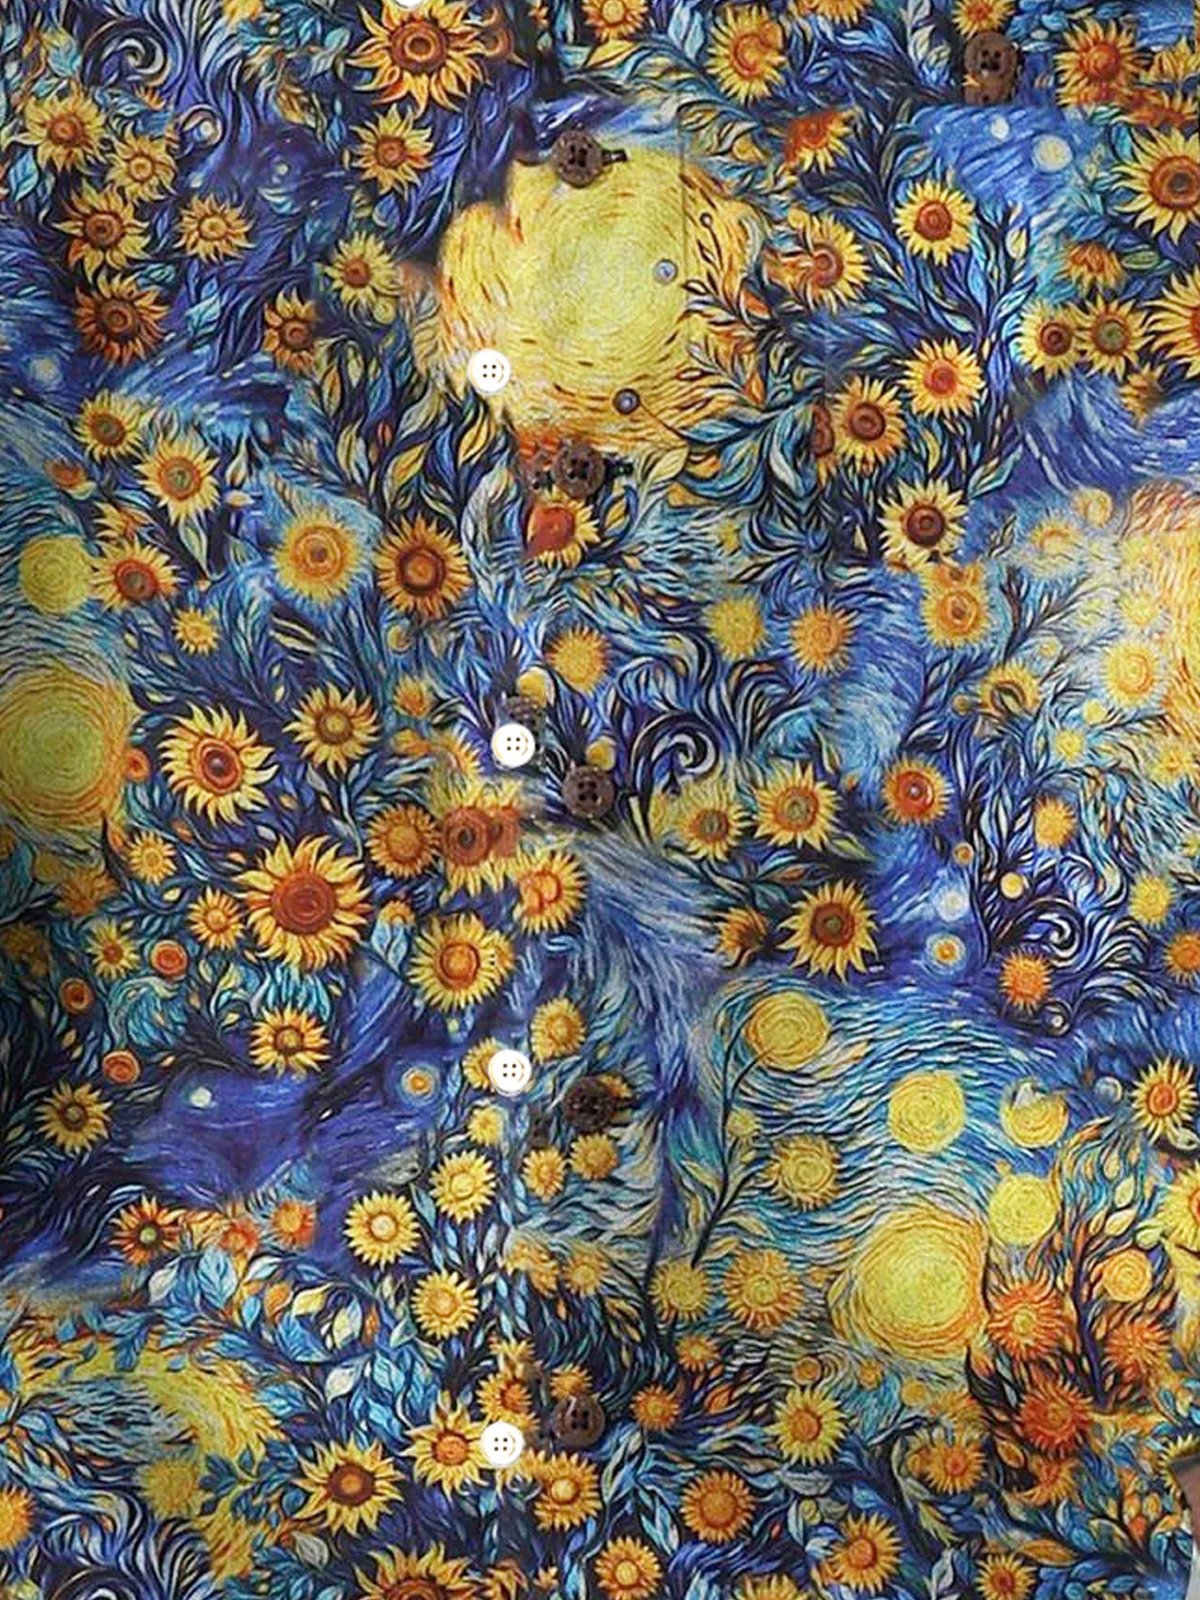 Royaura®  Hawaiian Art Sunflower Floral Print Men's Button Pocket Short Sleeve Shirt